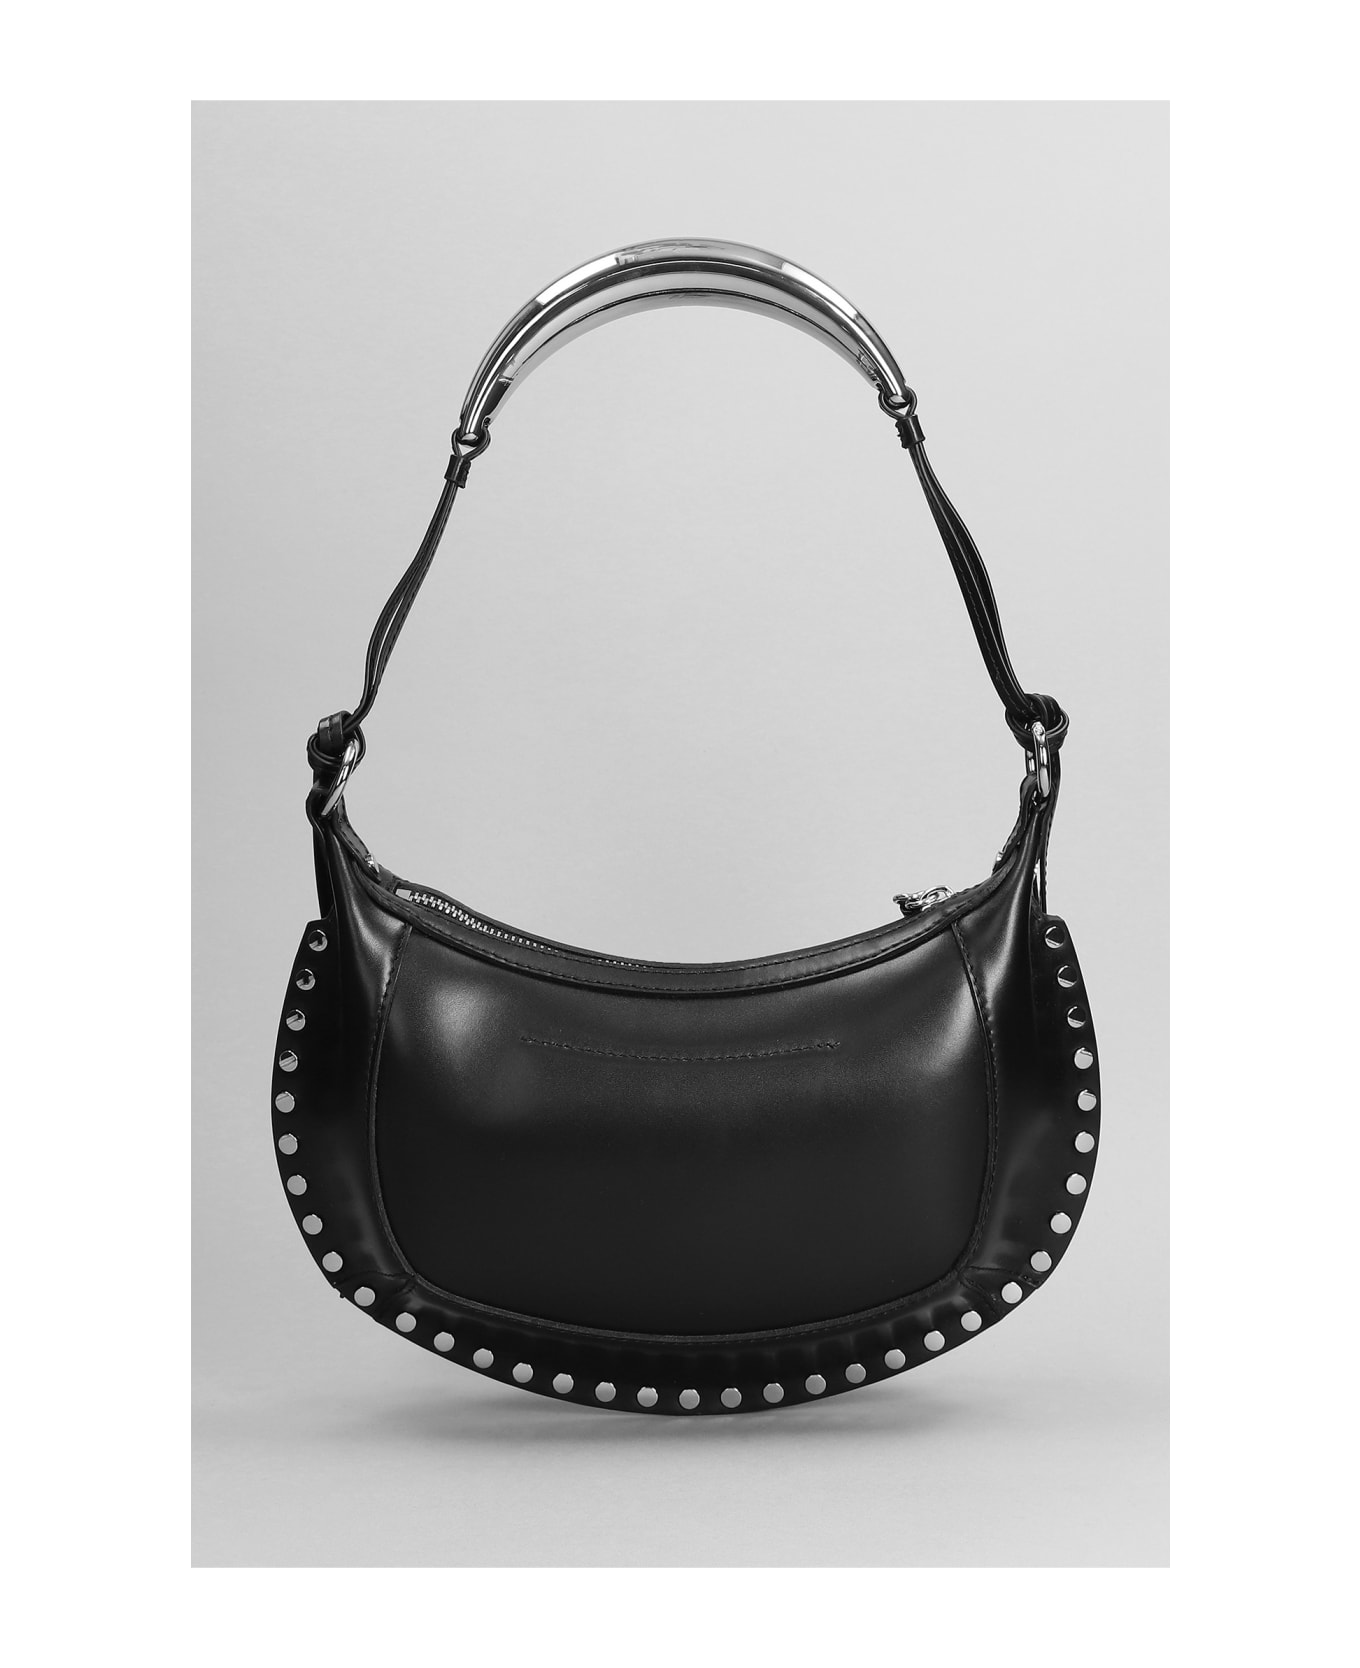 Isabel Marant Oskan Moon Shoulder Bag In Black Leather - black トートバッグ